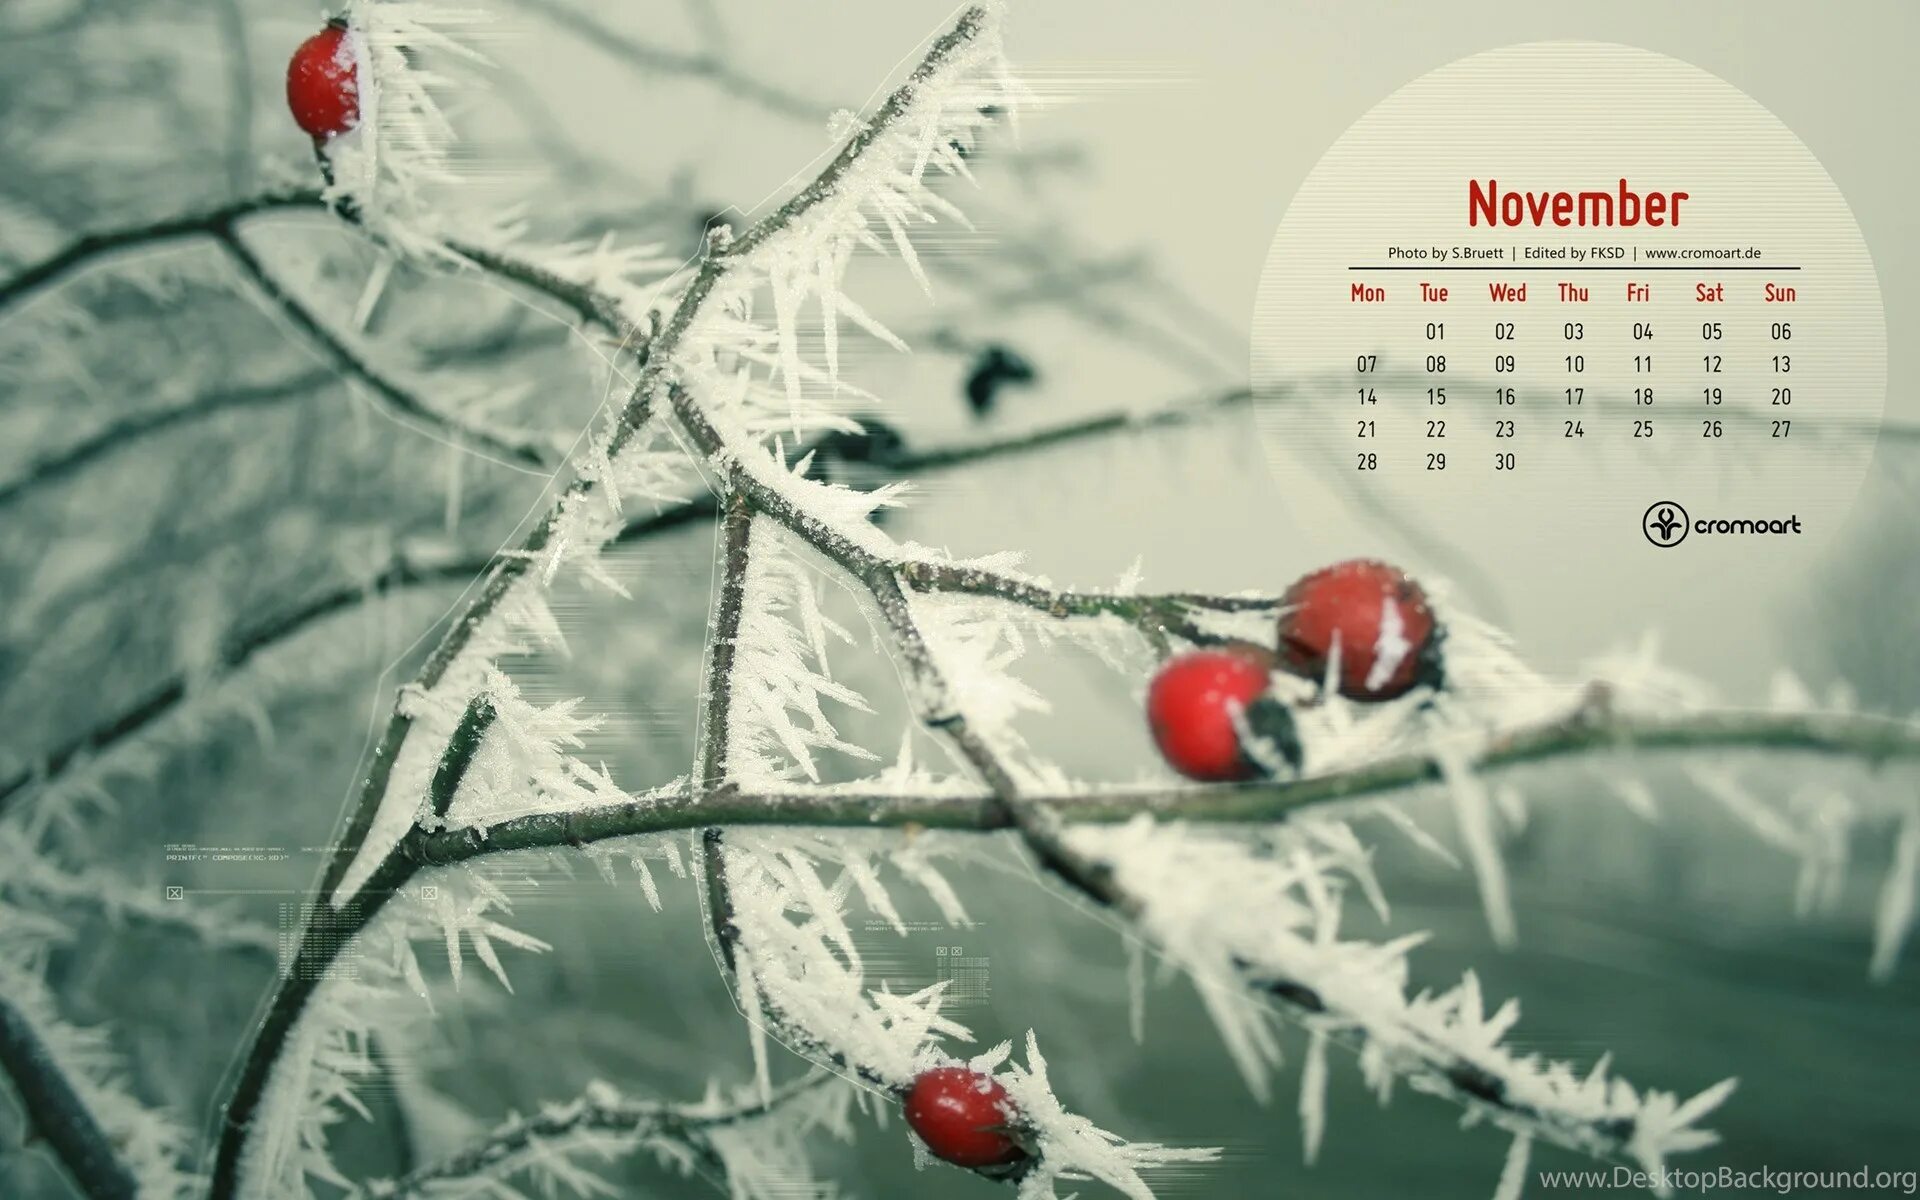 Картинки февраль стильные. Обои на рабочий стол ноябрь. Фон для календаря. Календарь ноябрь на рабочий стол. Фоновые рисунки ноябрь.